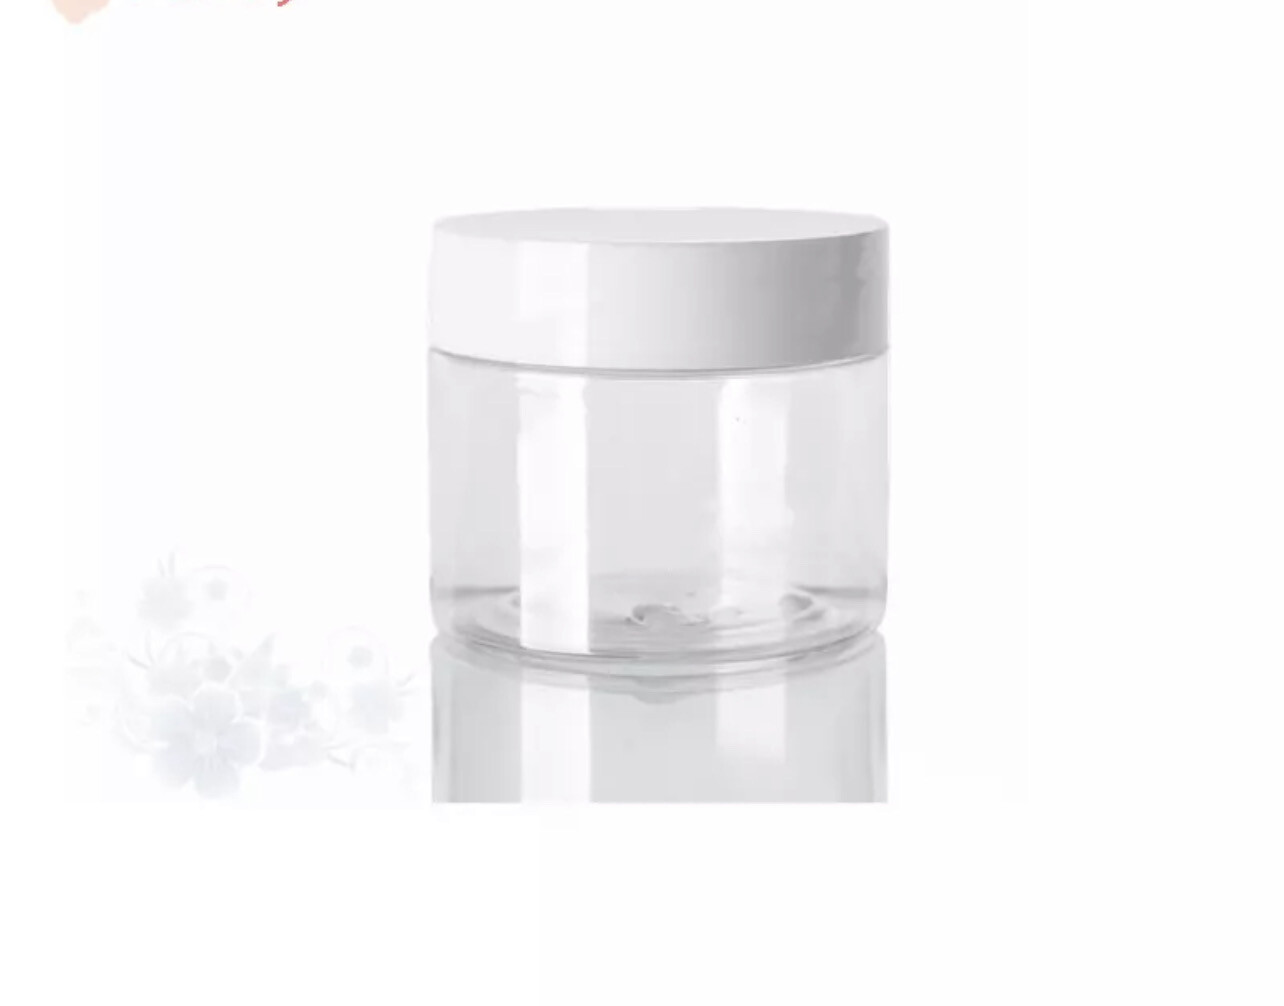 250 ml Empty Jar